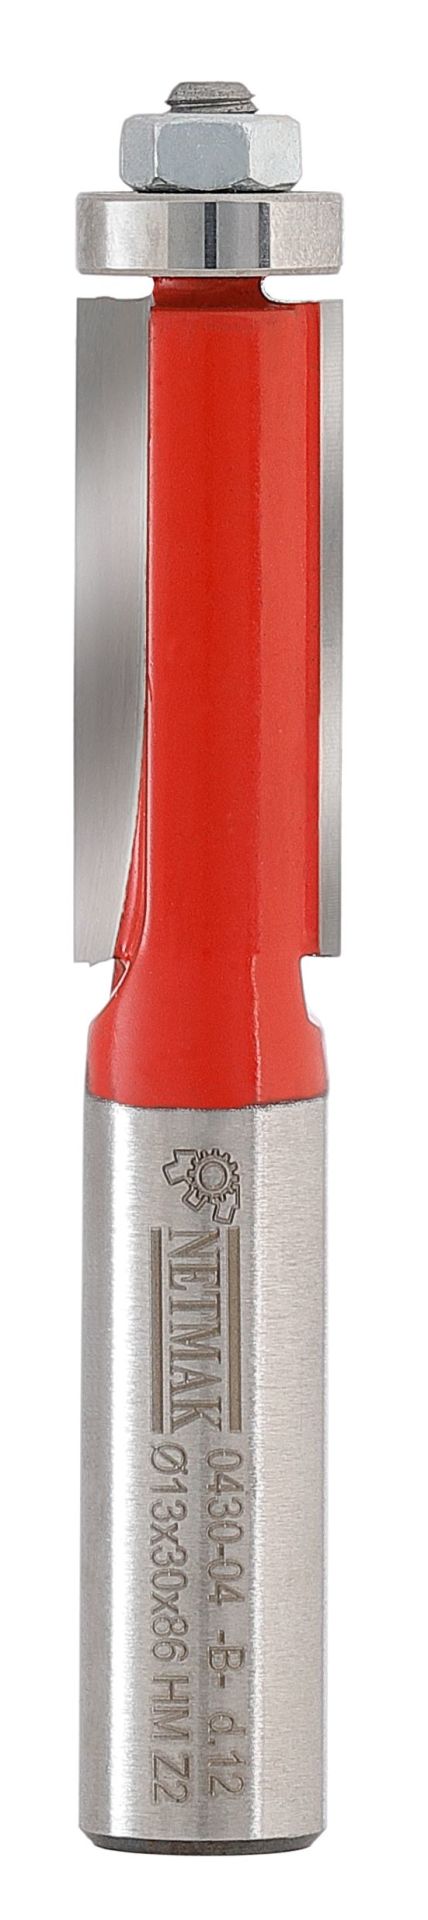 Netmak Bilyalı Temizleme Bıçağı 13x30x12mm 430-04B